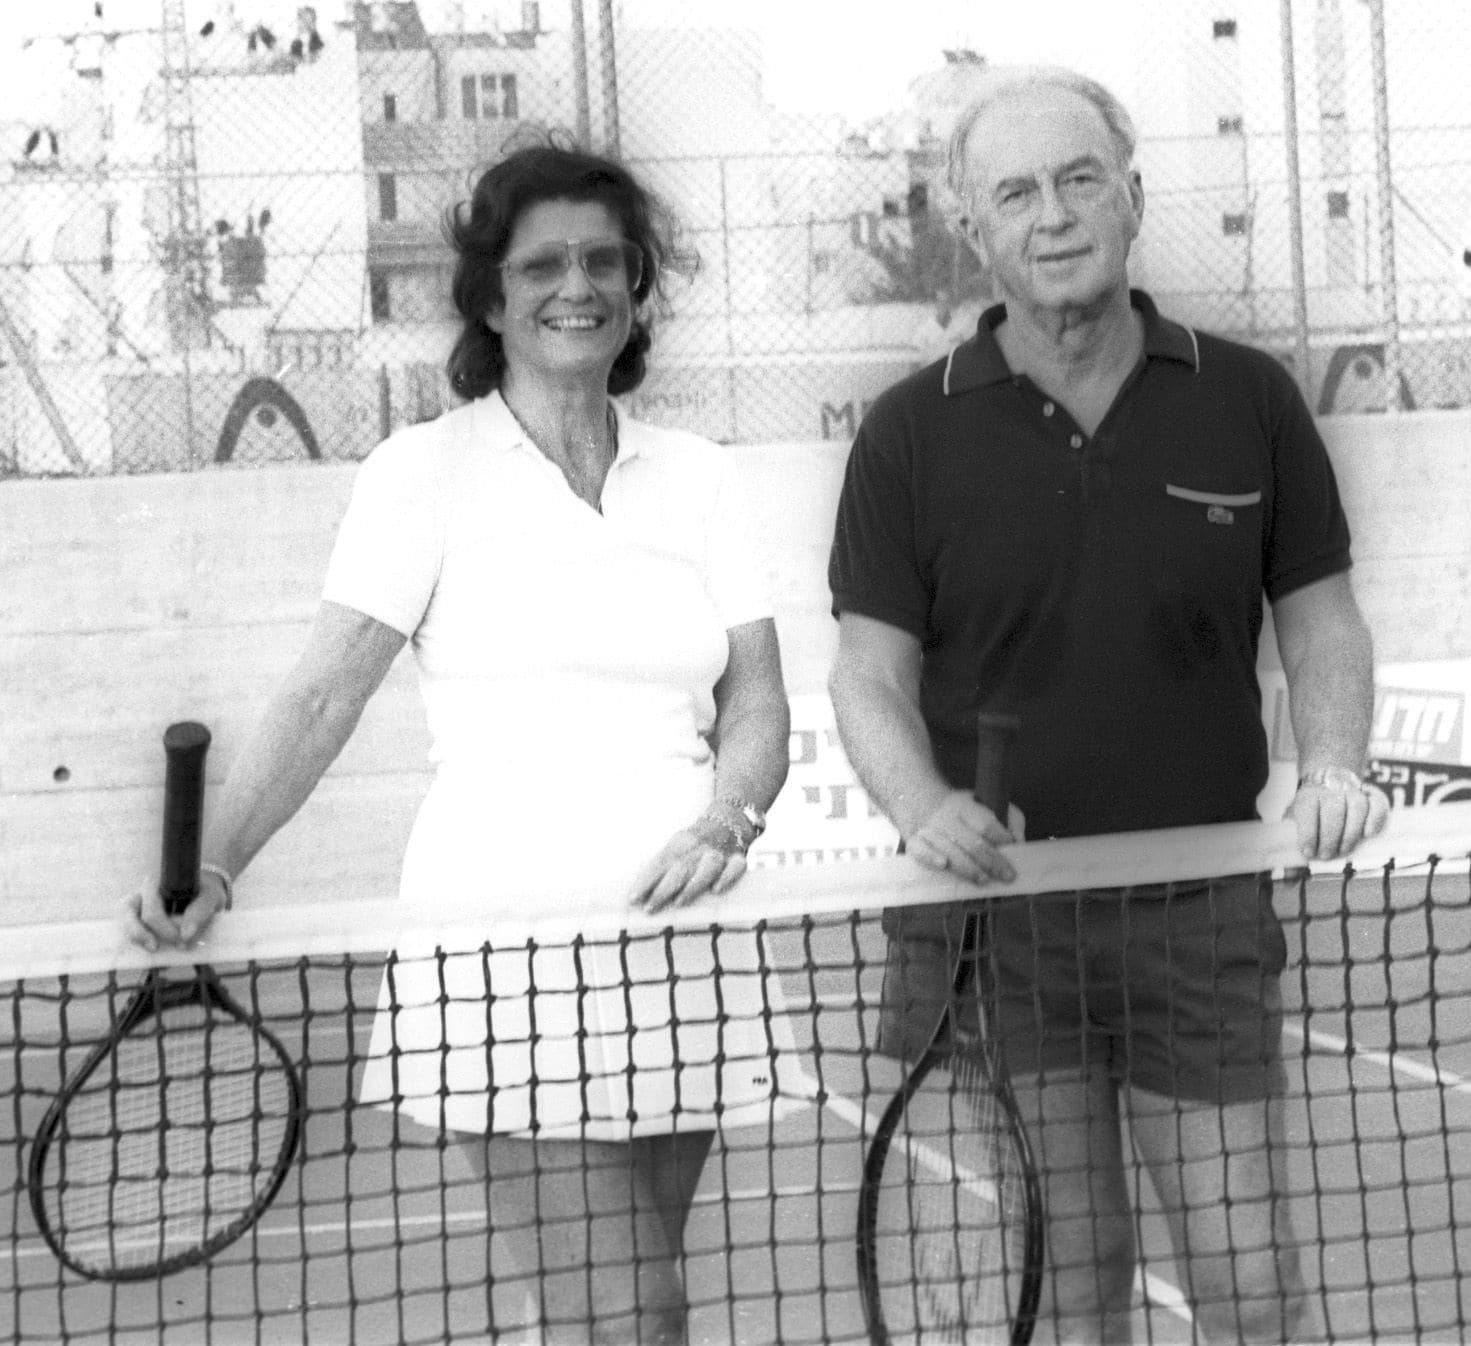 תושבי רמת אביב, הזוג לאה ויצחק רבין, משחקים טניס, 1985 (צילום: יוסי אלוני, ארכיון דן הדני, הספרייה הלאומית)